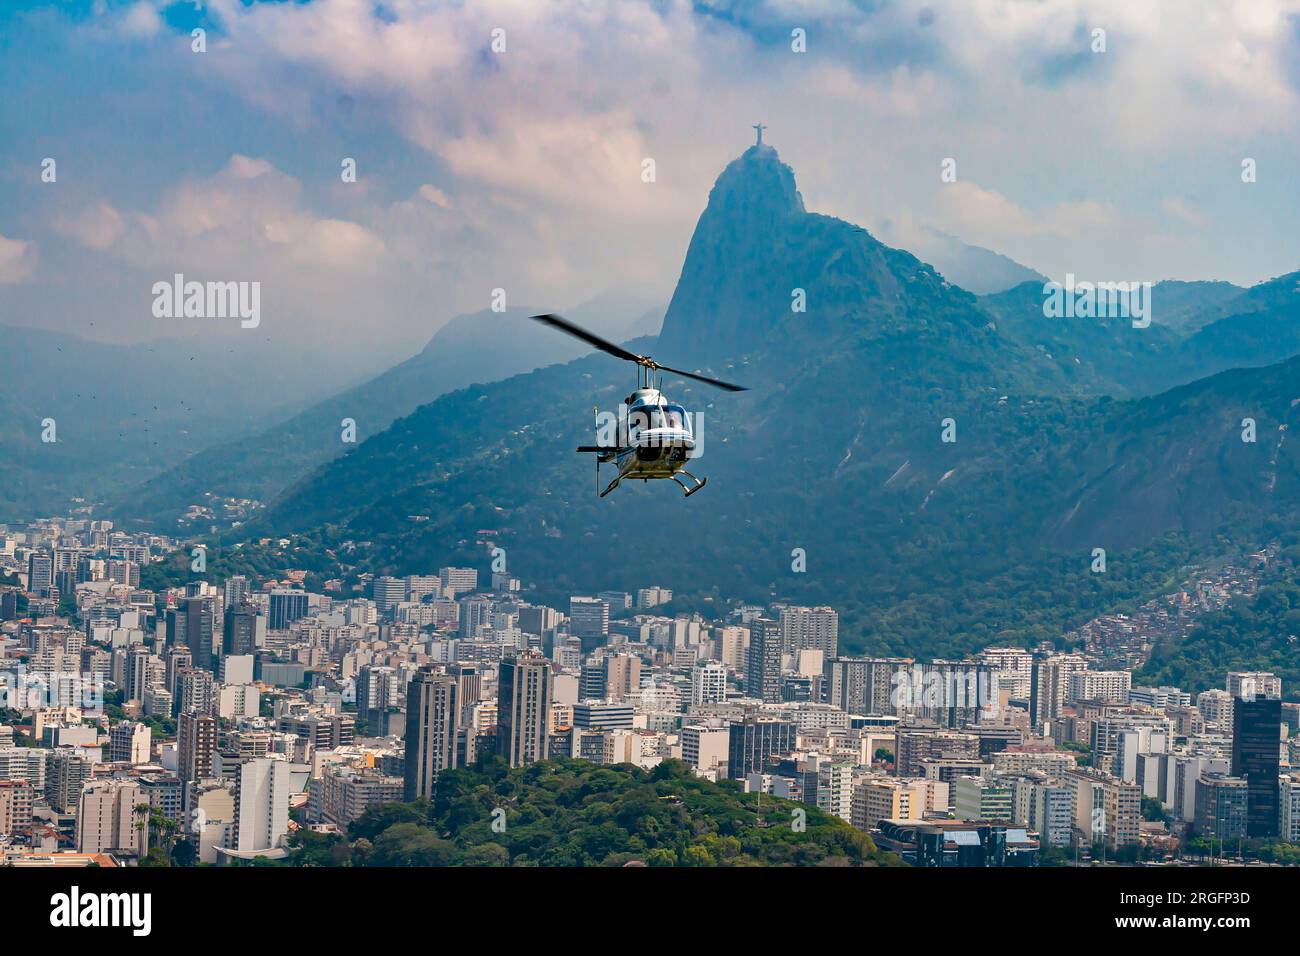 Vista panorámica de la ciudad y las playas desde la plataforma de observación en la montaña Pan de Azúcar en Río de Janeiro con helicóptero en vuelo durante el día Foto de stock